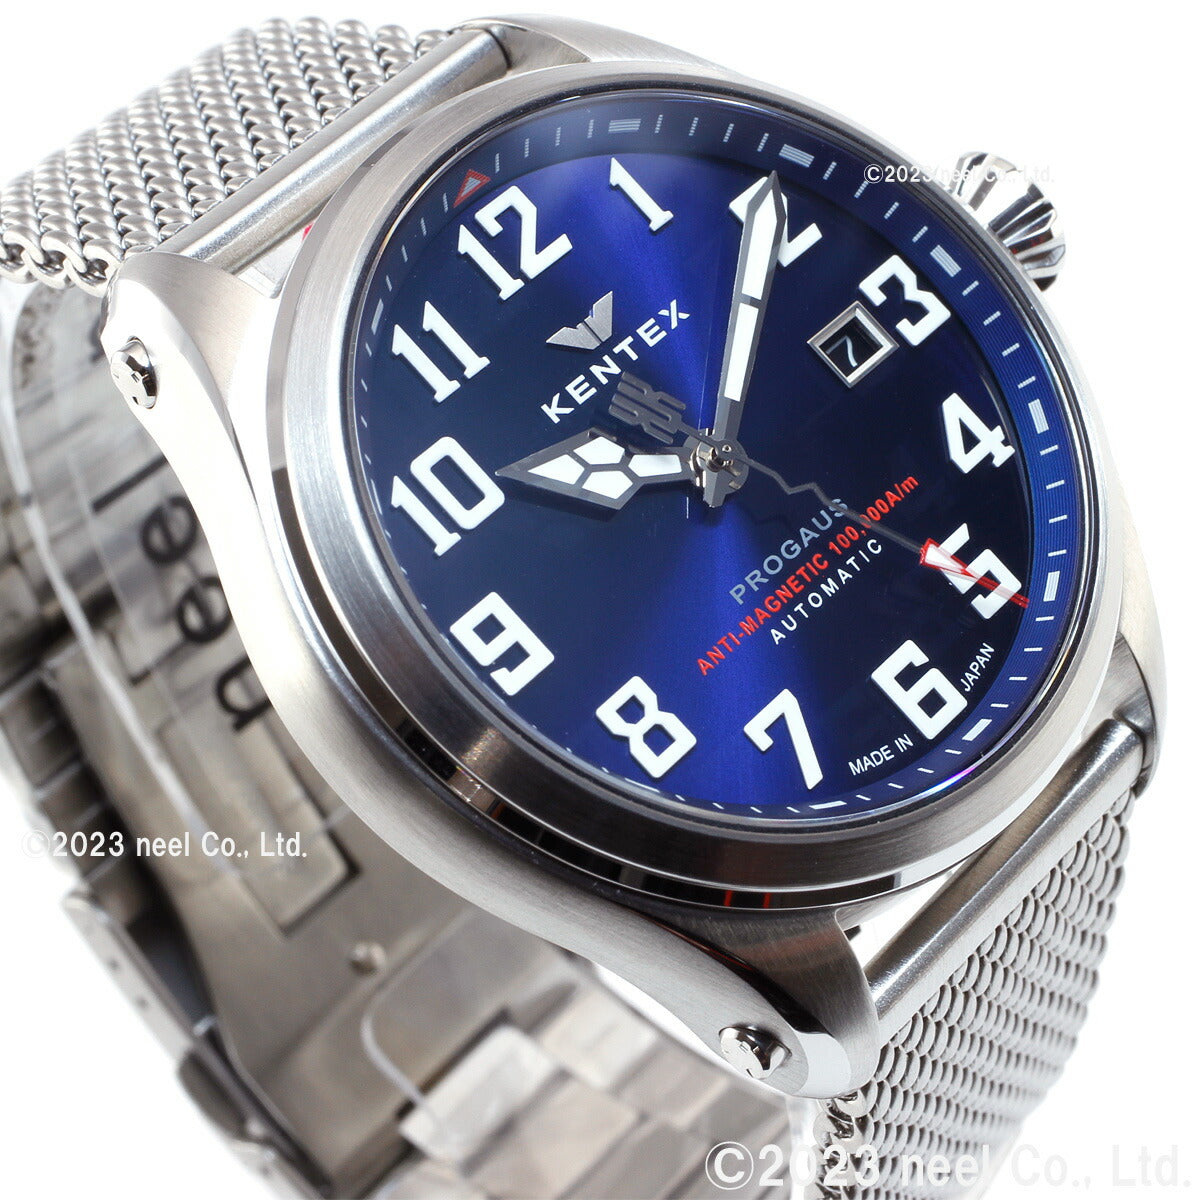 ケンテックス KENTEX 腕時計 時計 メンズ 耐磁時計 自動巻き プロガウス 日本製 S769X-5